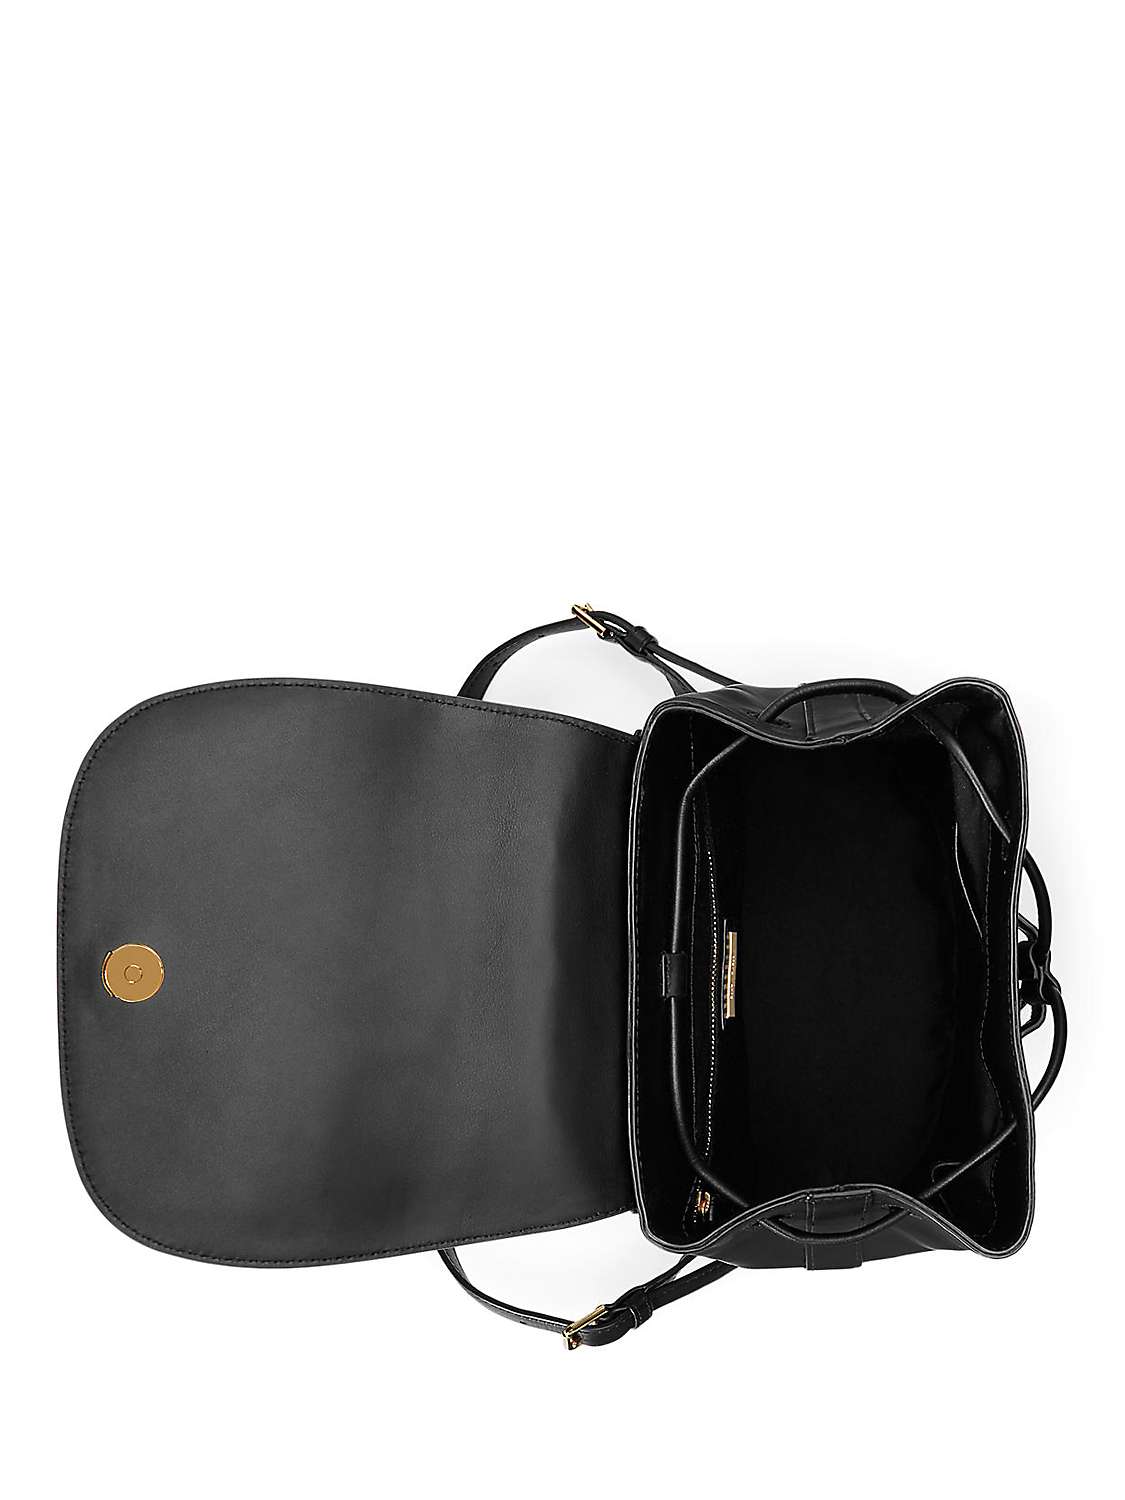 Buy Lauren Ralph Lauren Winny 25 Leather Backpack Online at johnlewis.com